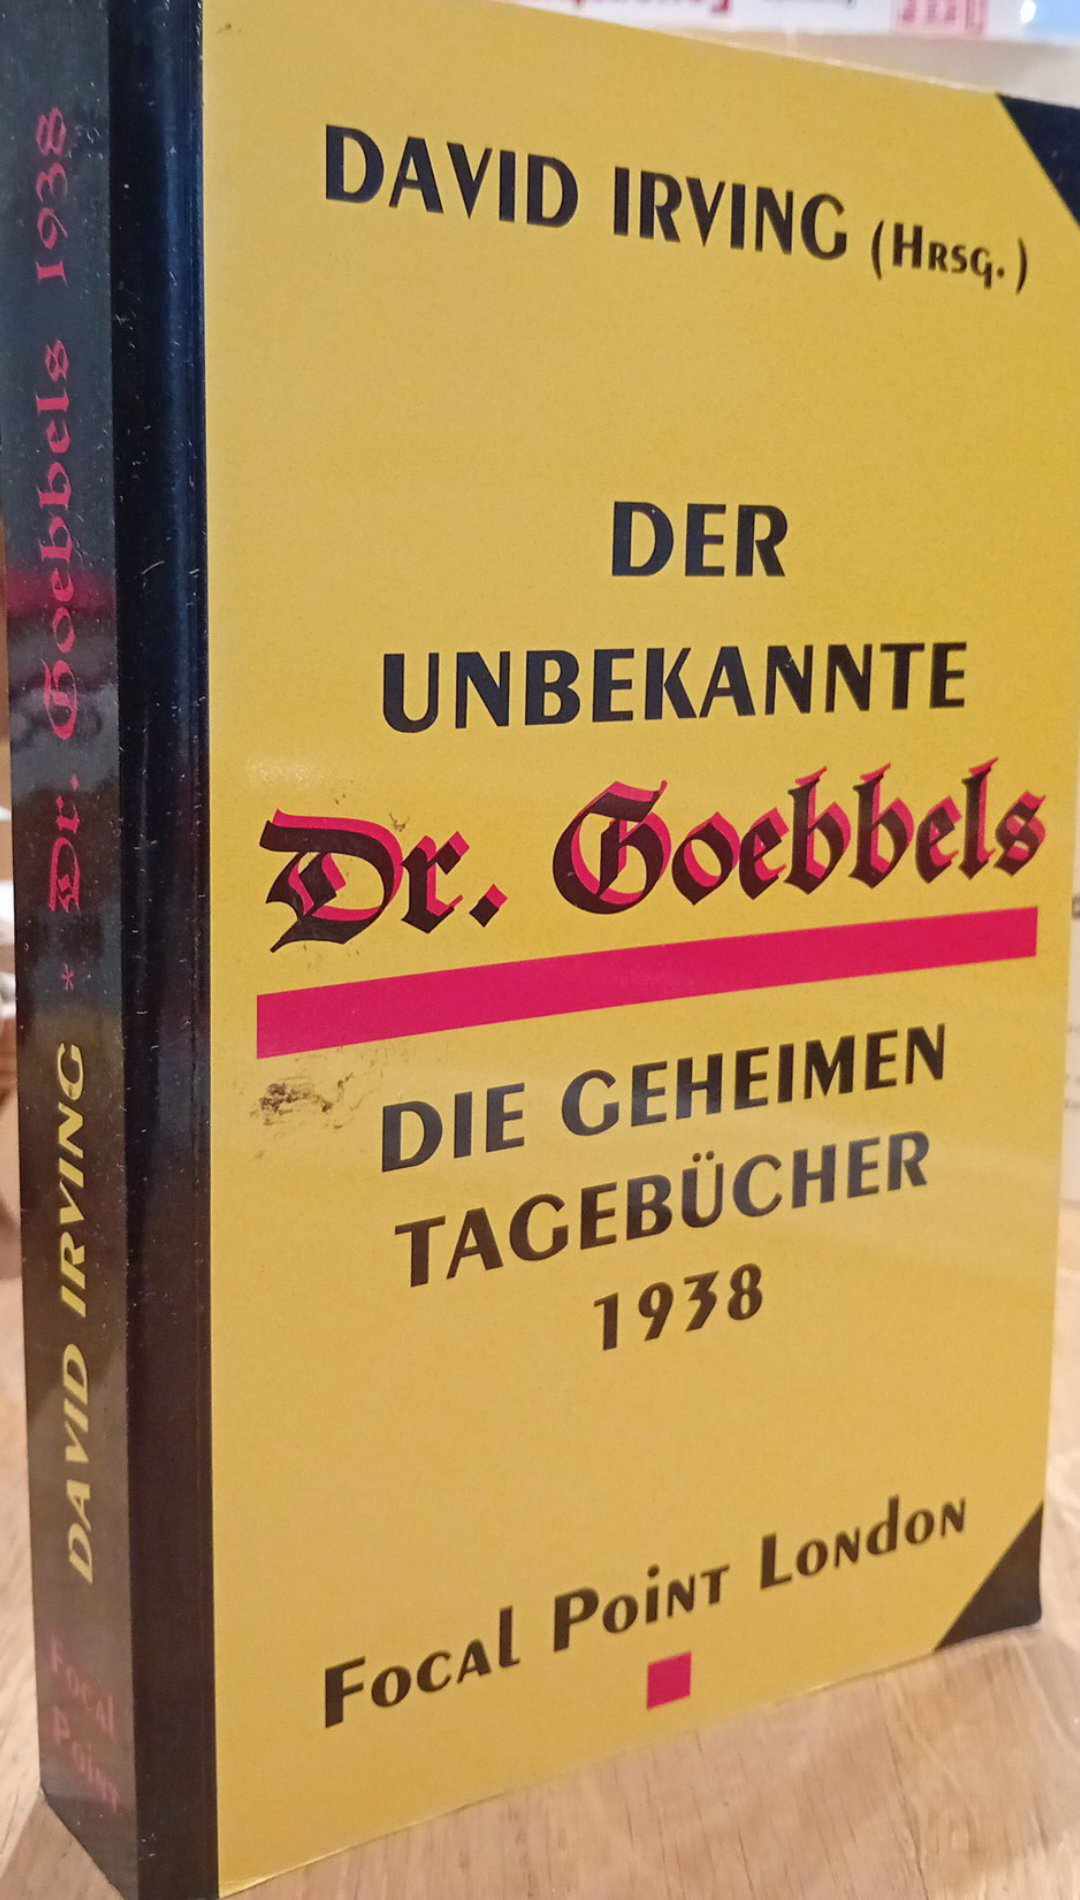 Der unbekannte Goebbels - geheime tagebucher 1938 - David Irving / 435 blz